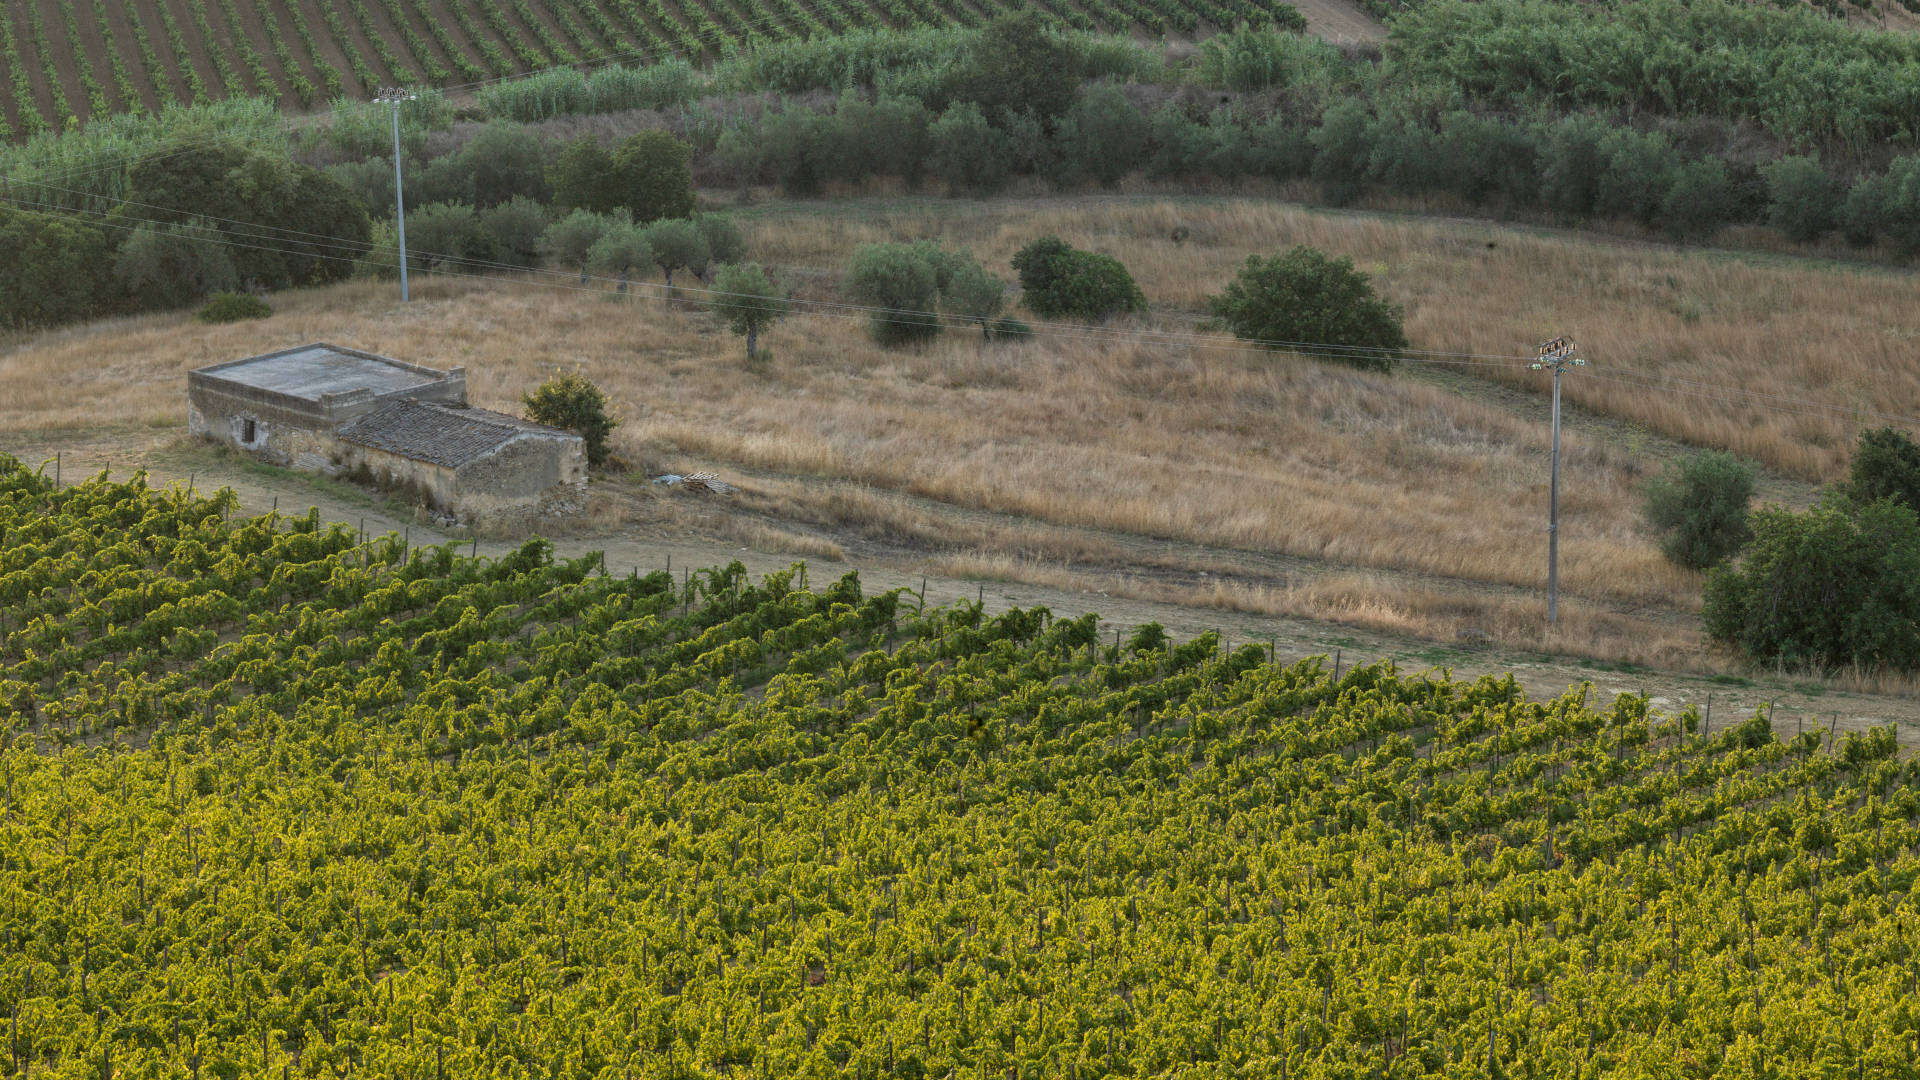 Vineyard, landscape